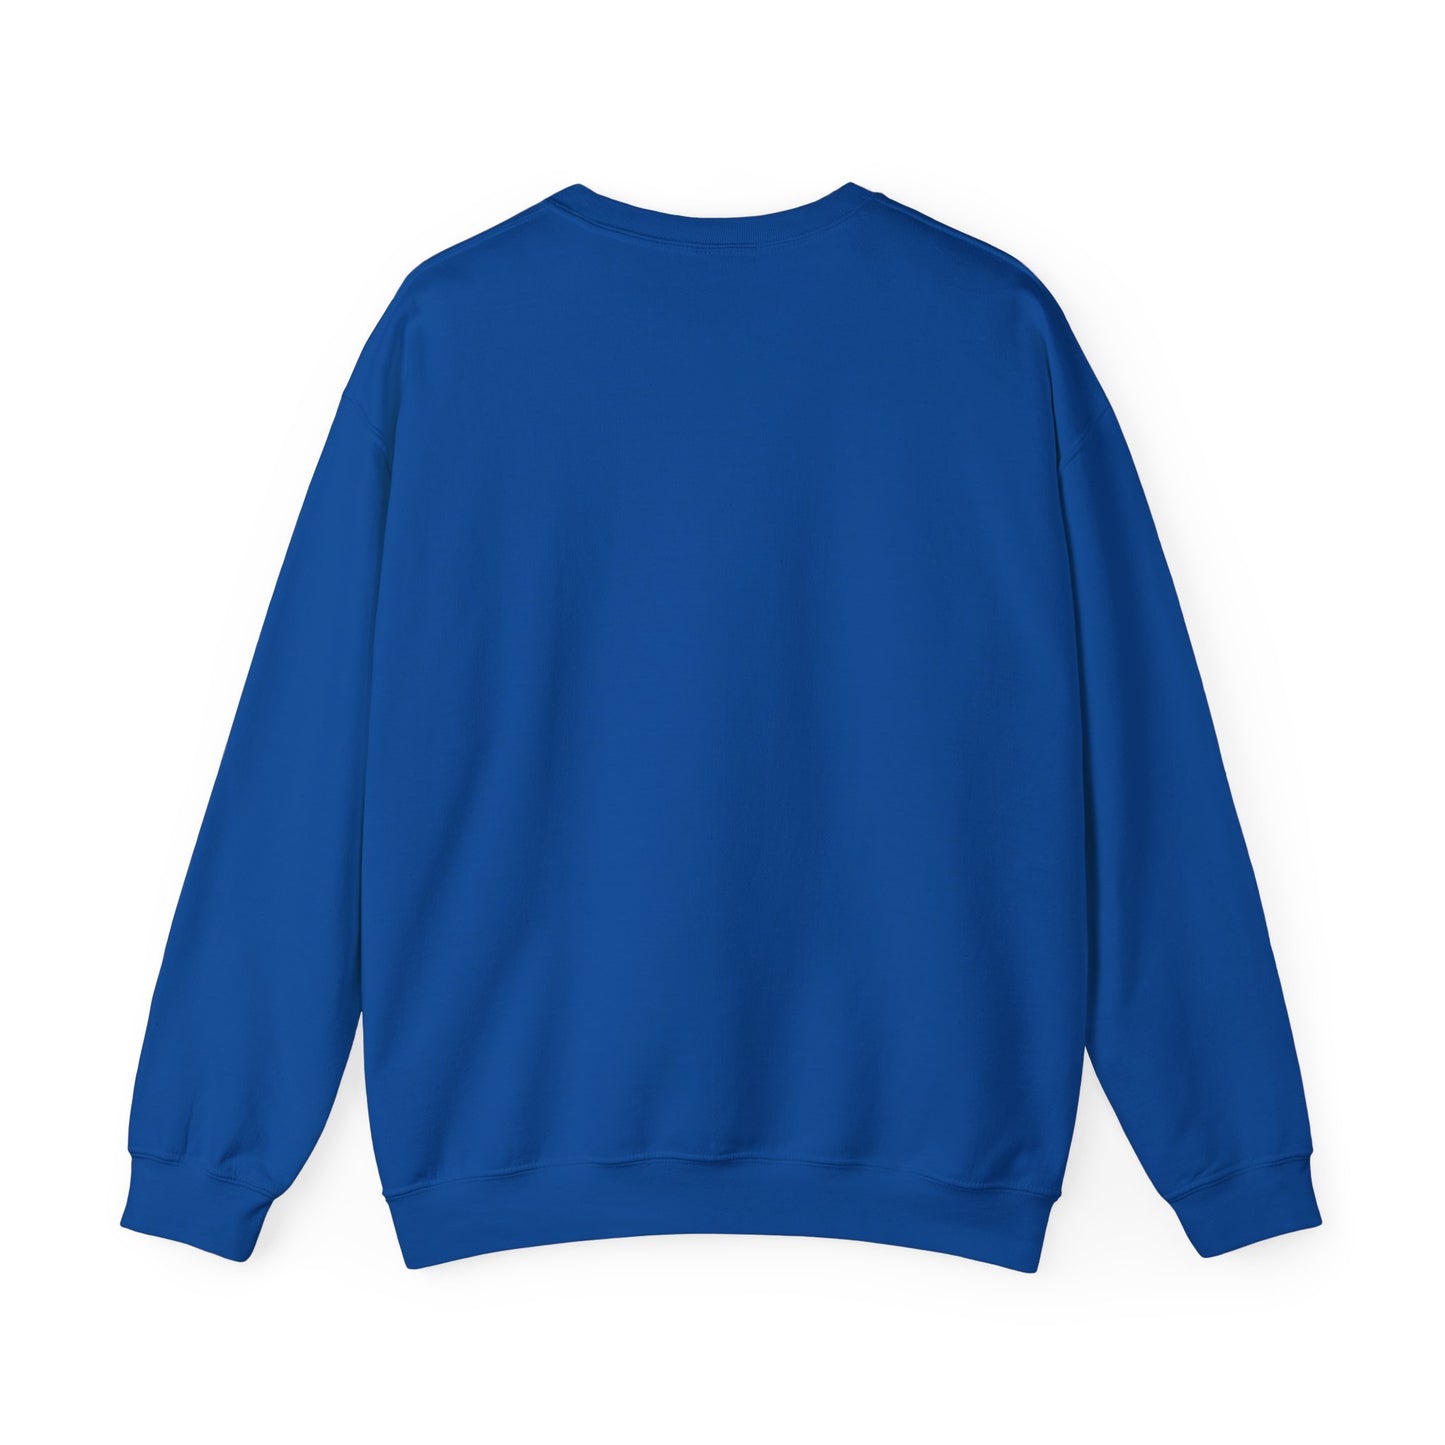 The Groom Bachelor Party Sweatshirt, Groomsmen Sweatshirt, Custom Bachelor Party Gifts, Funny Bachelor Sweatshirt, Group Sweatshirt, S1556